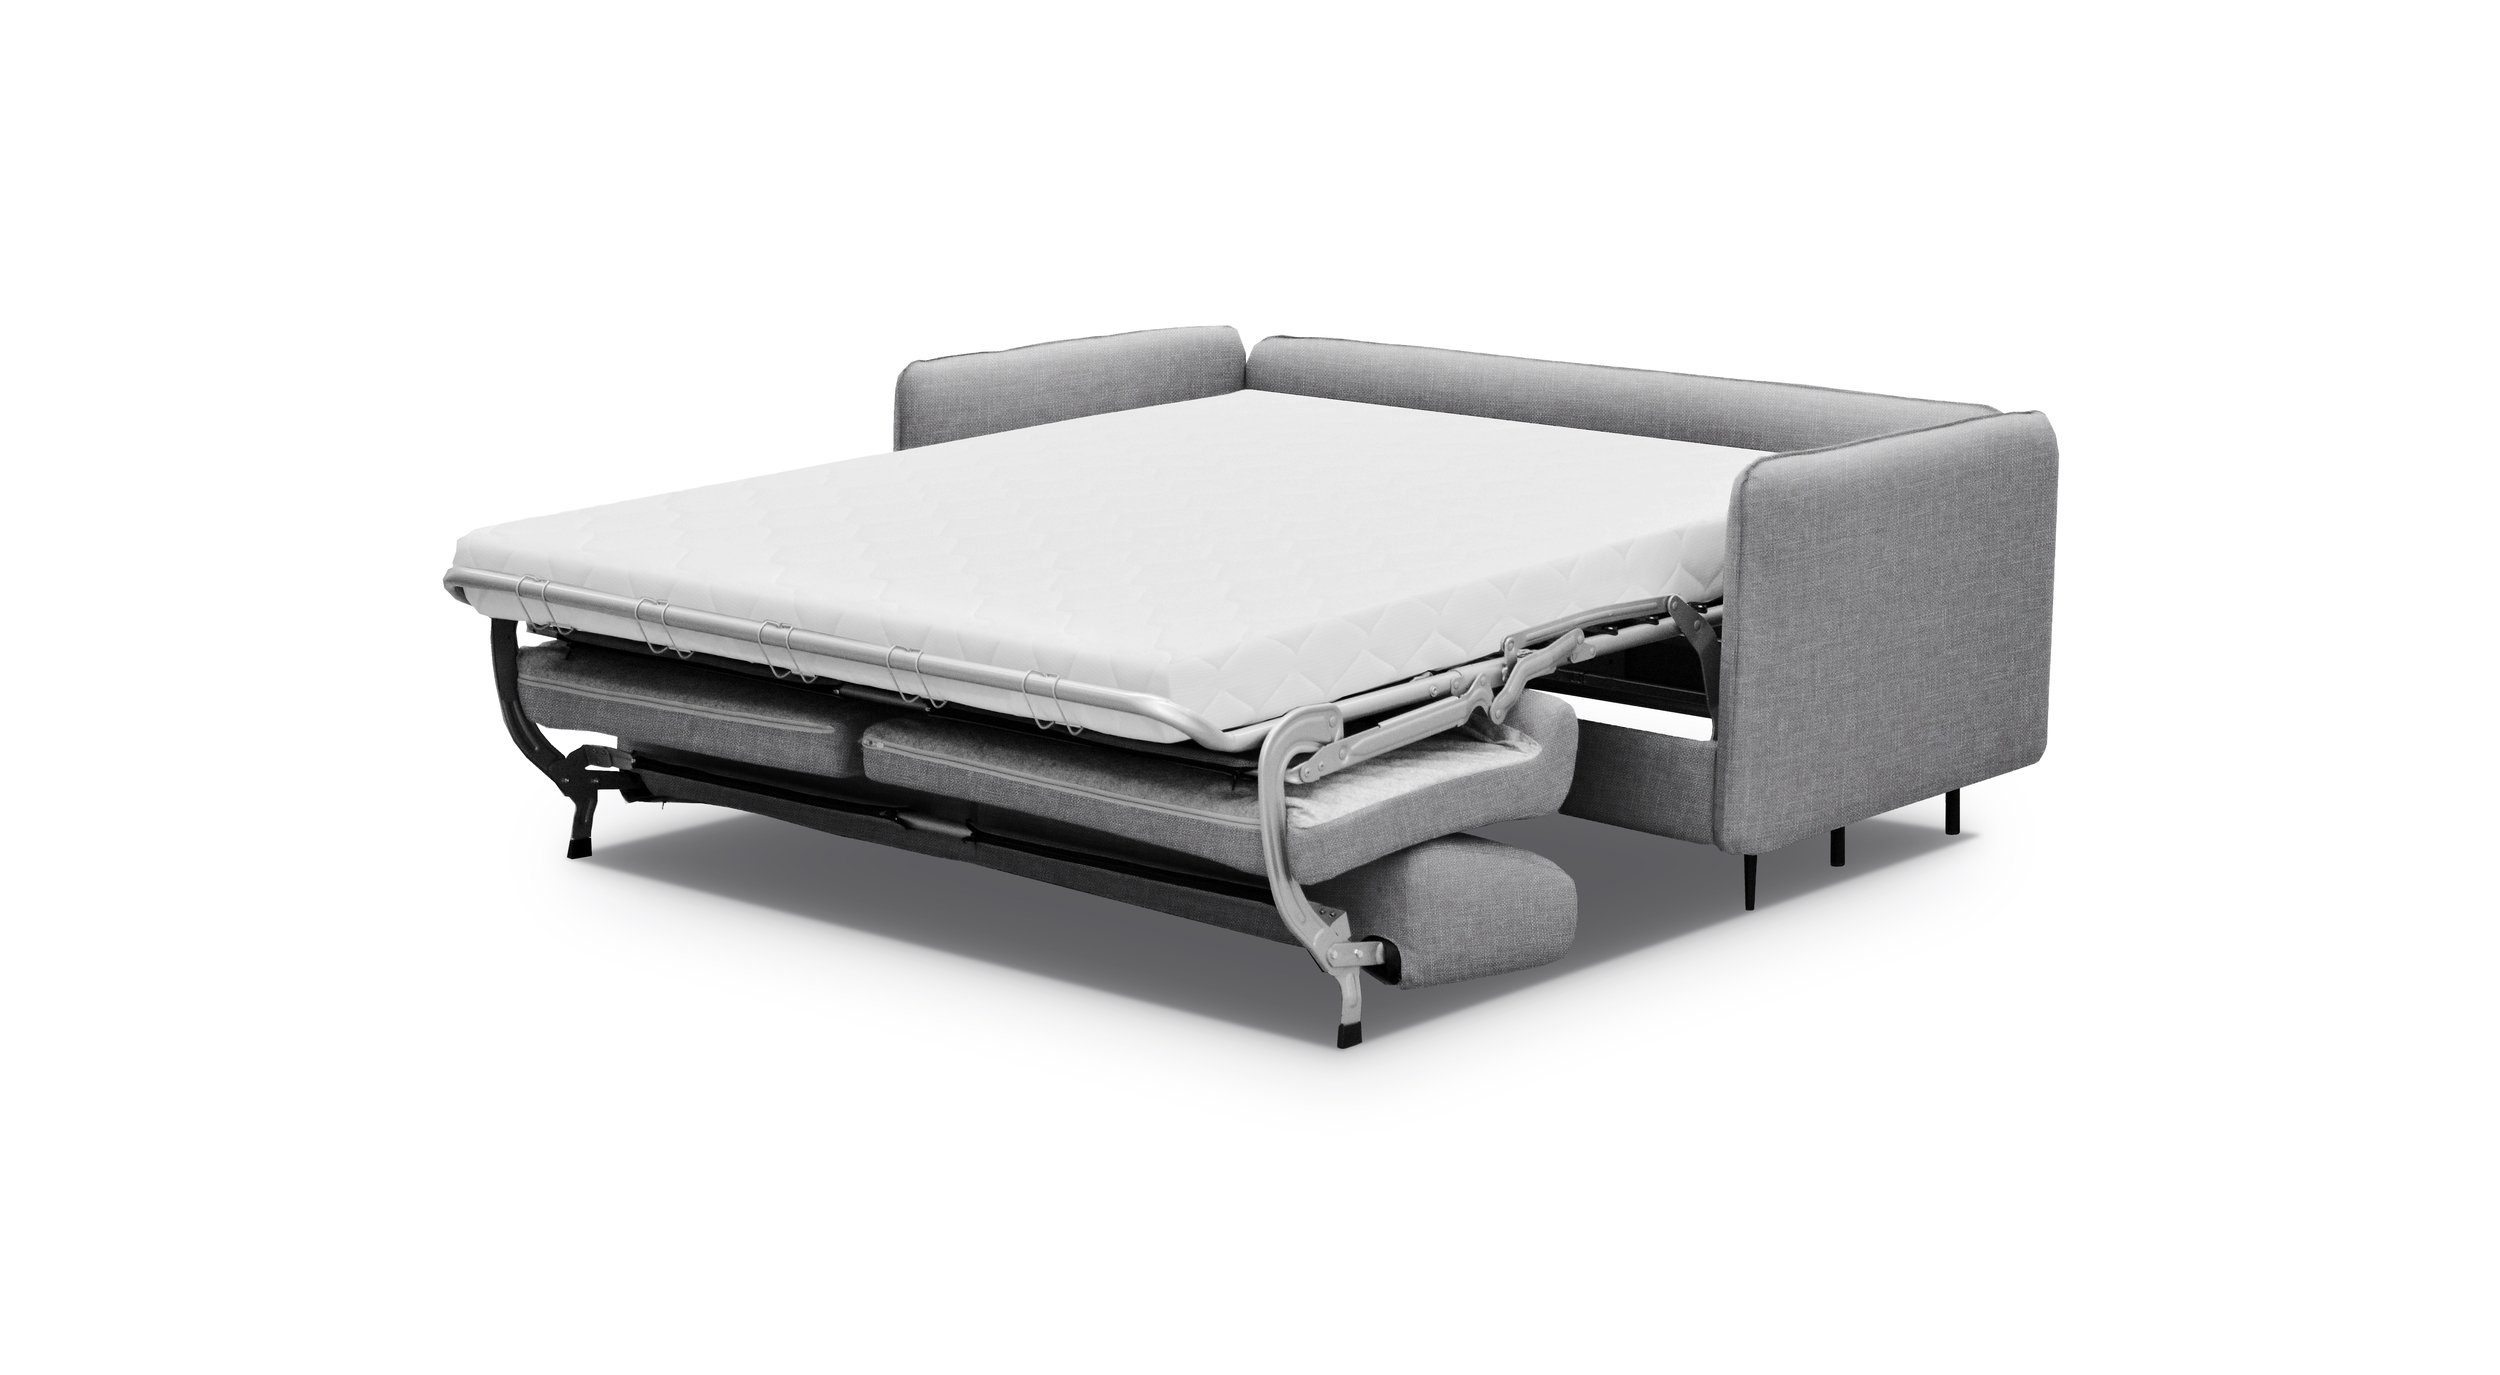 Raum Modern Bettfunktion, stellbar, 3-Sitzer Design, frei Stylefy mit Sofa, im Metall 2-Sitzer, Arnold,